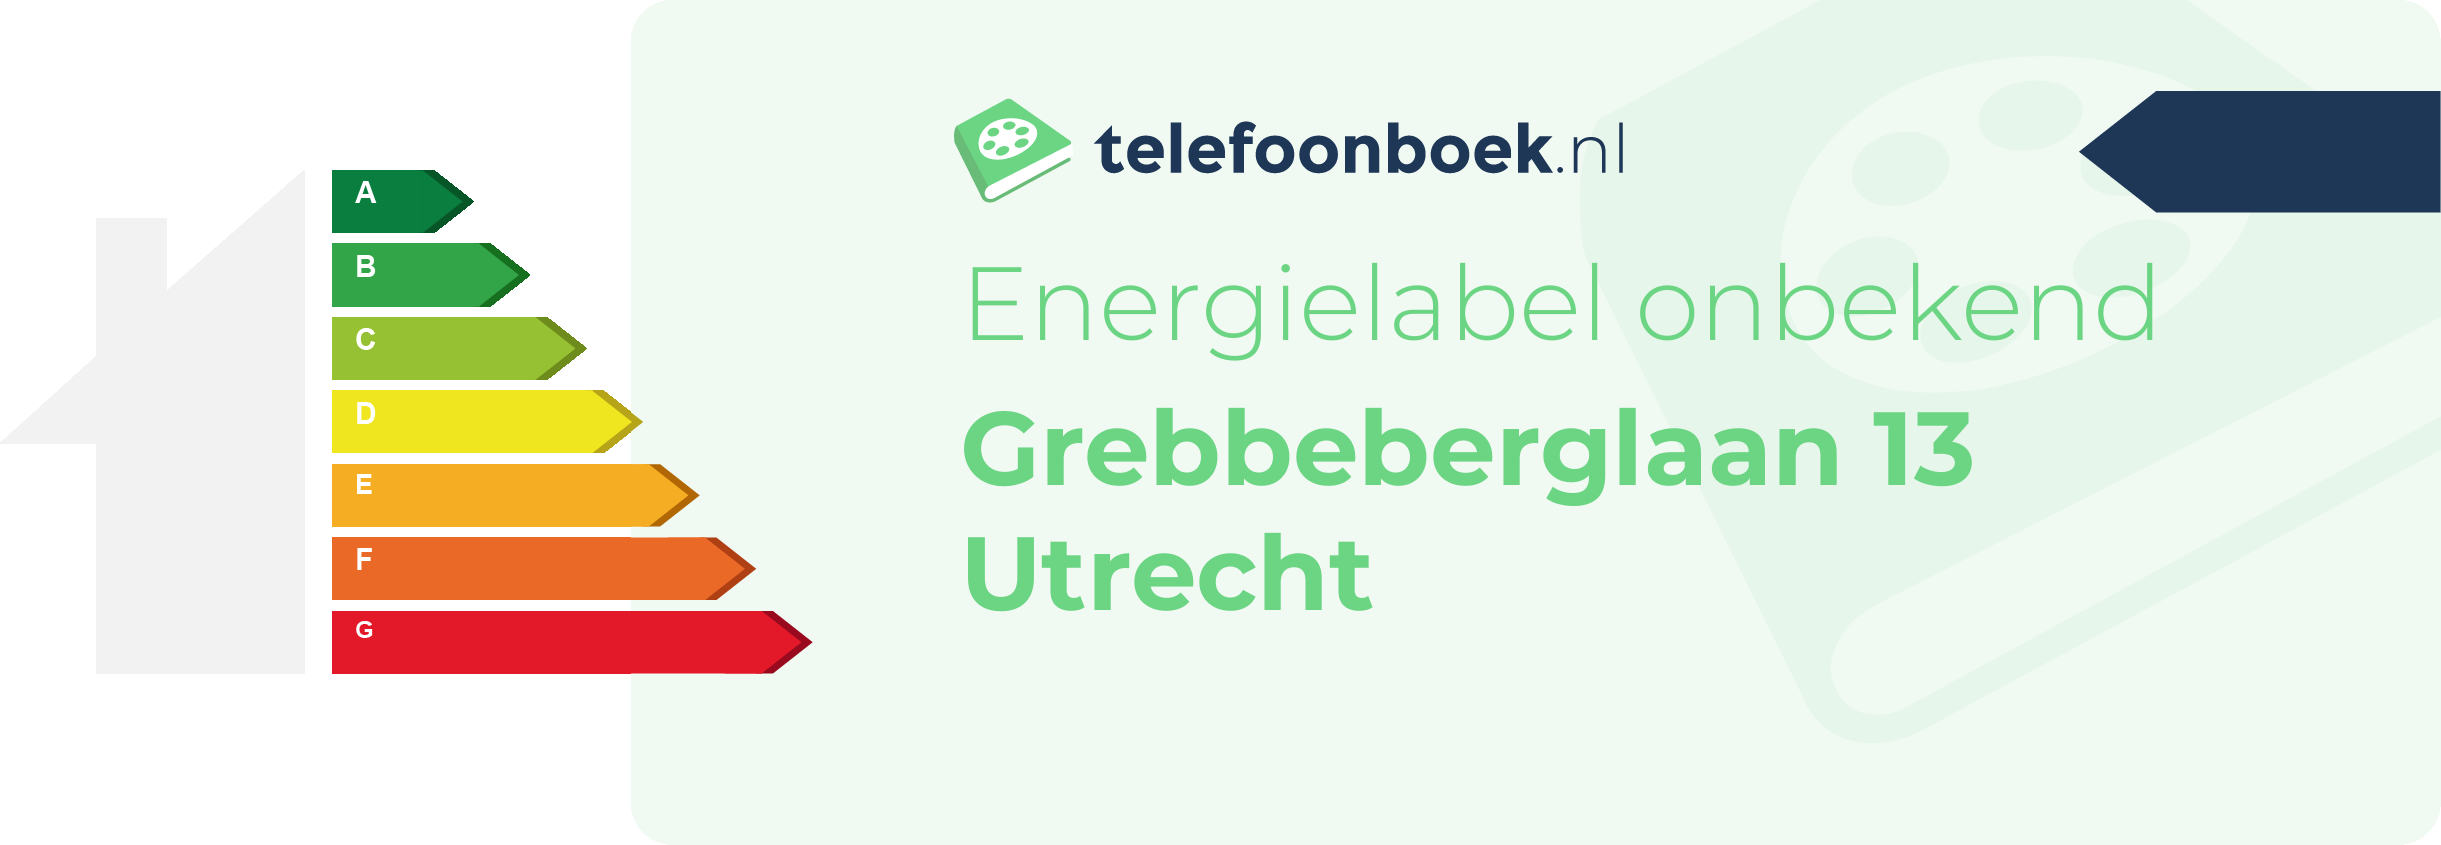 Energielabel Grebbeberglaan 13 Utrecht